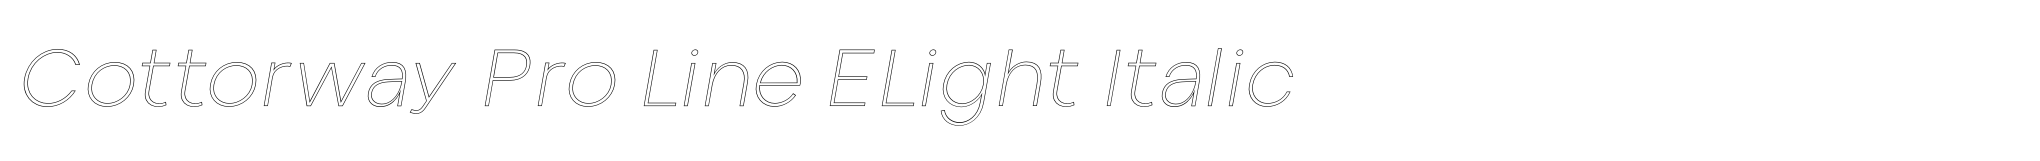 Cottorway Pro Line ELight Italic image